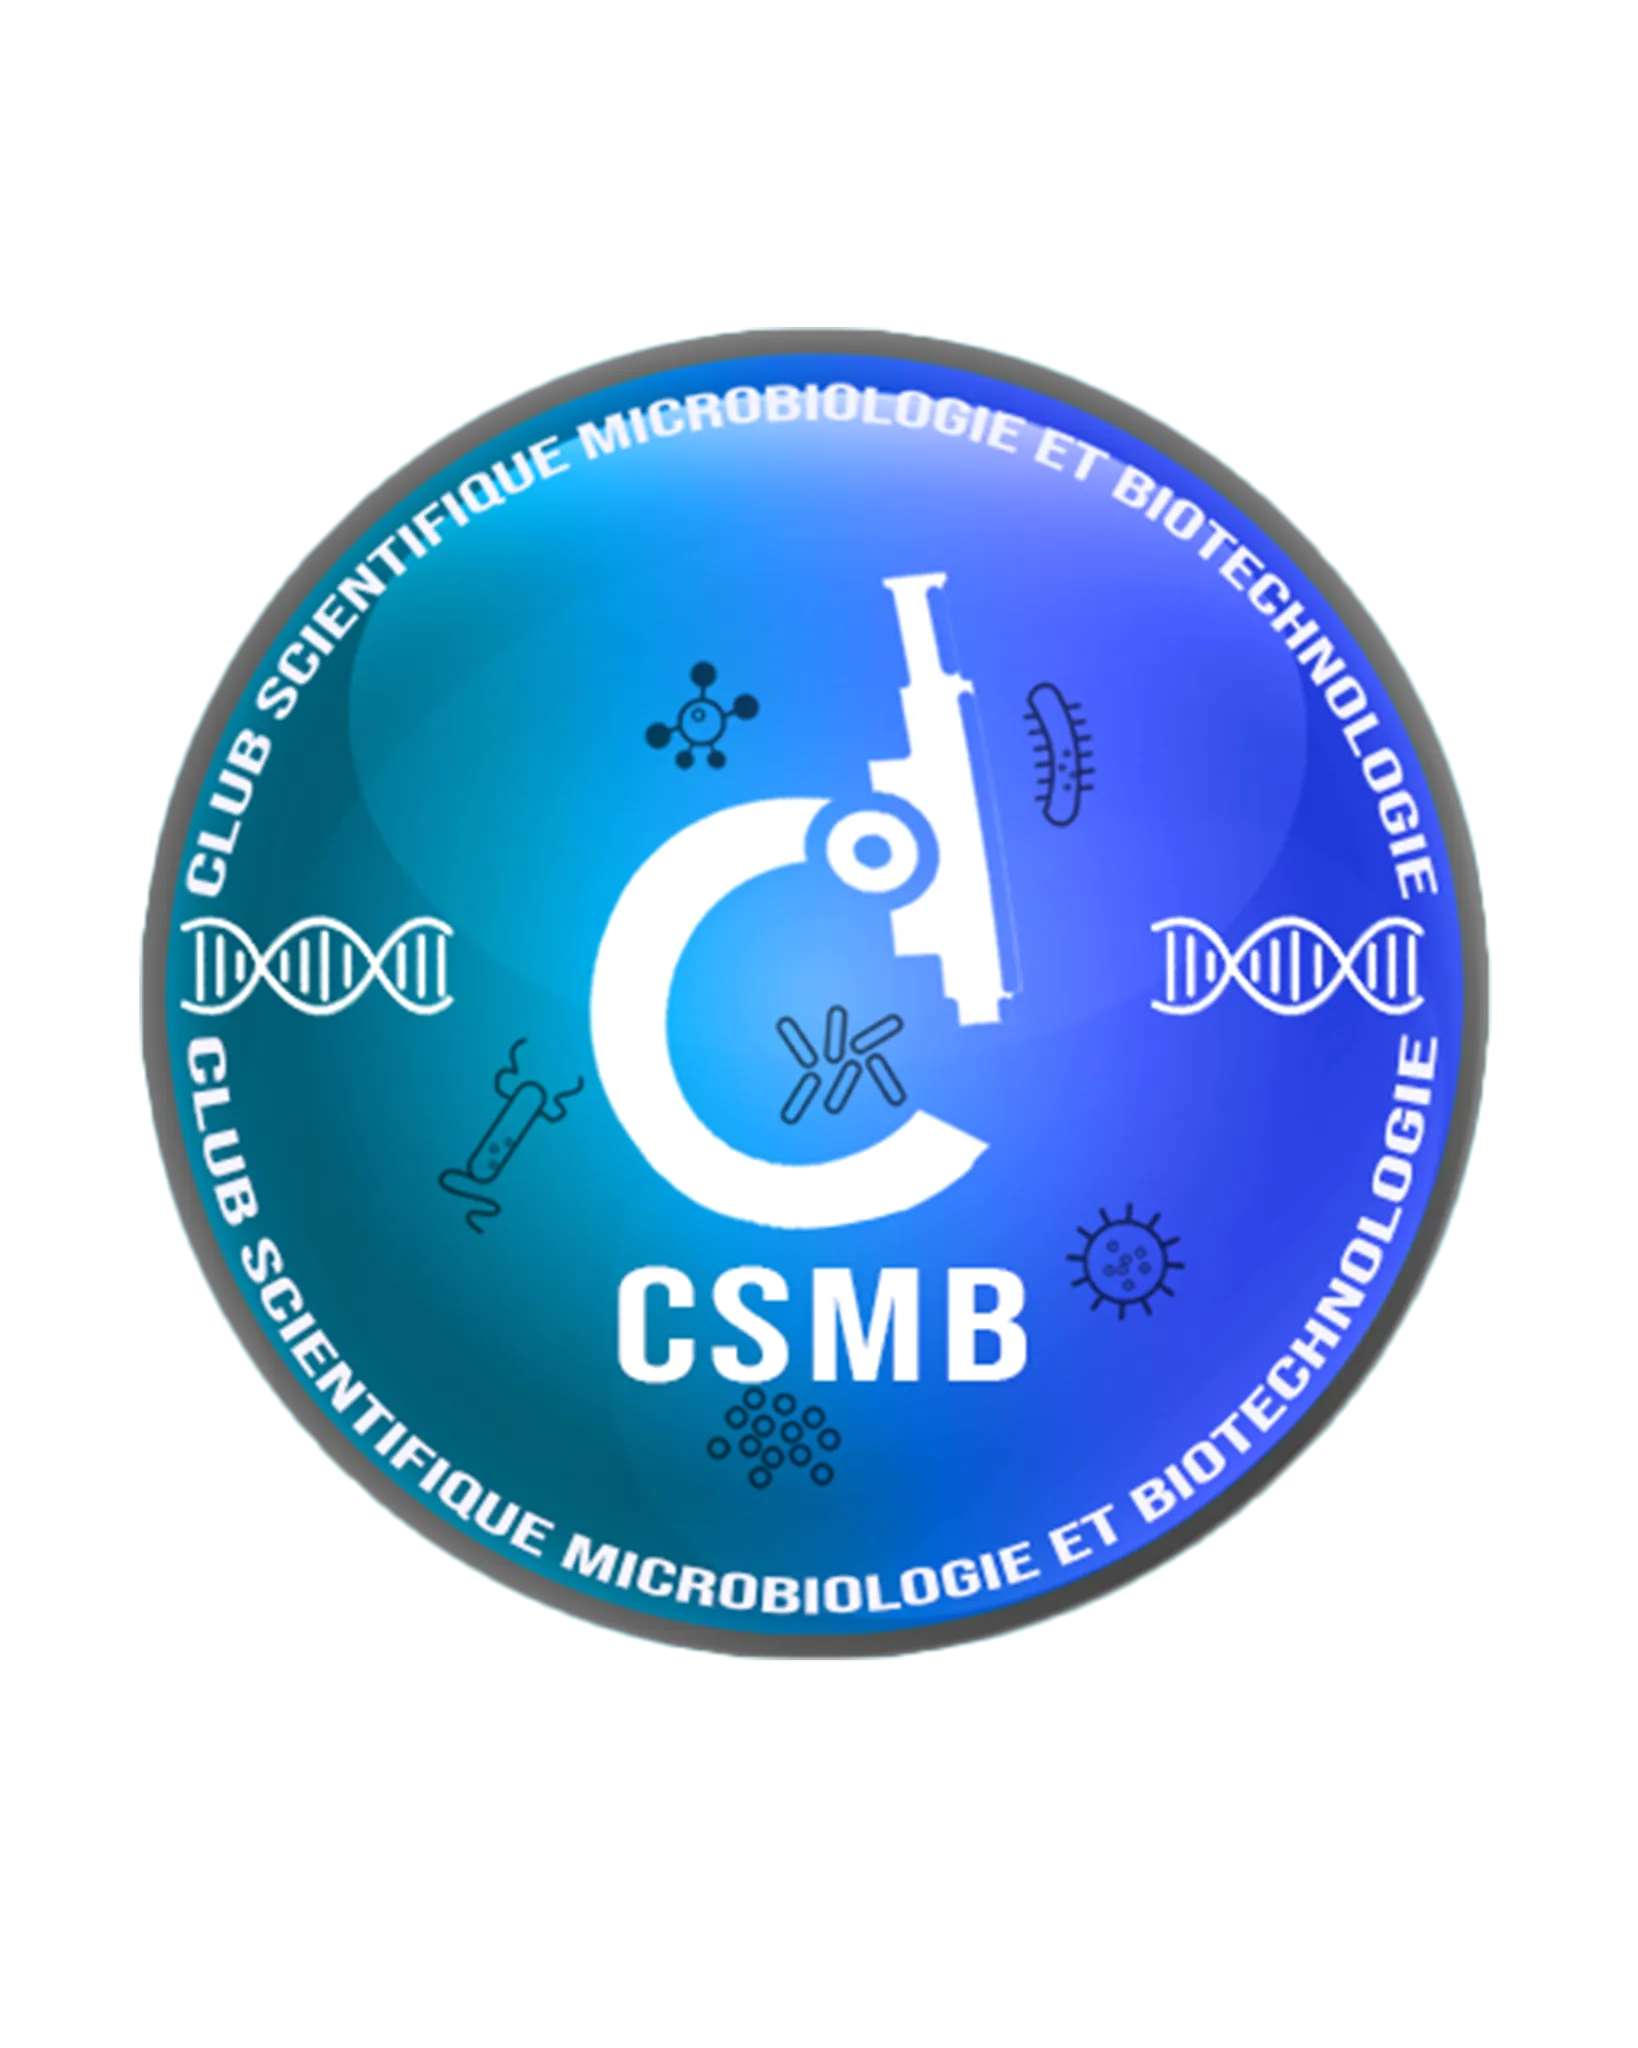 Club scientifiques de microbiologie et biotechnology